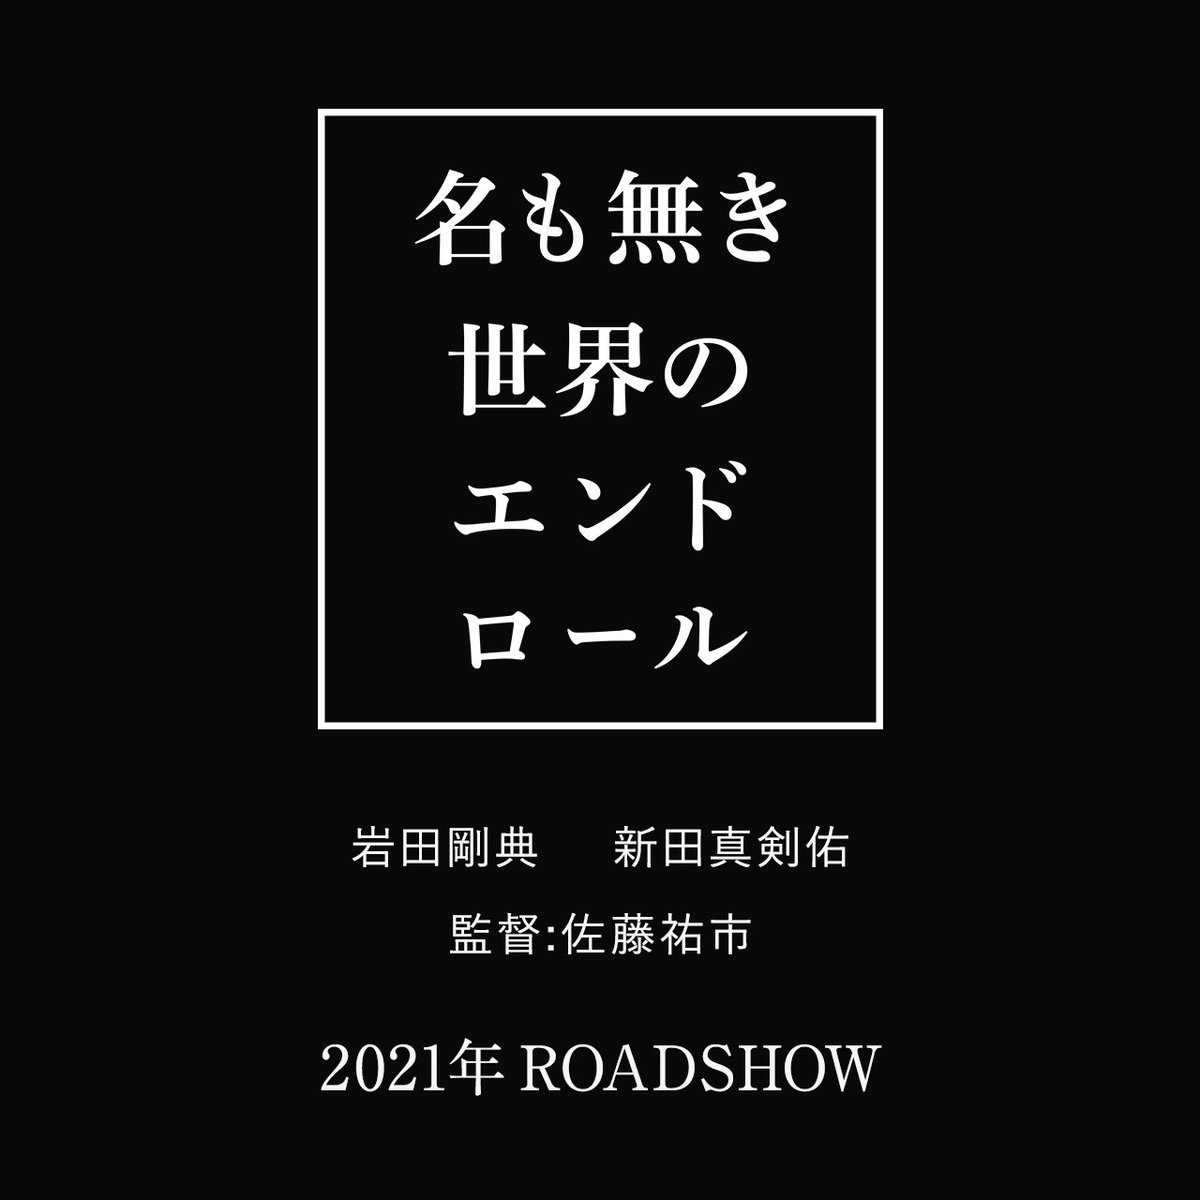 『名も無き世界のエンドロール 』
監督：佐藤祐市
2021年公開予定
公式HPはnamonaki.jp